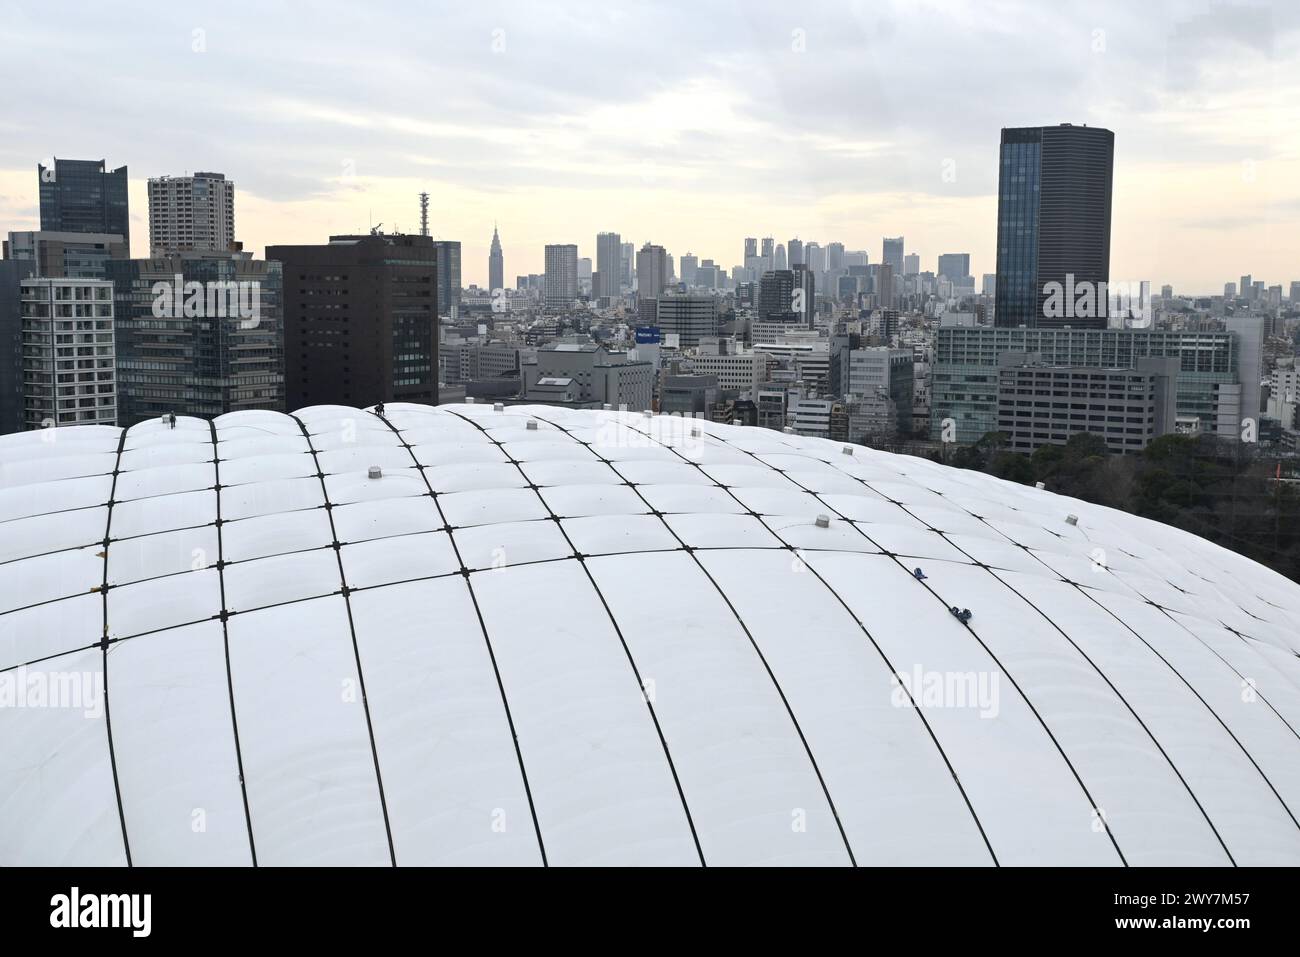 Le toit du dôme de Tokyo avec des ouvriers vus depuis une grande roue – Koraku, Bunkyo City, Tokyo, Japon – 29 février 2024 Banque D'Images